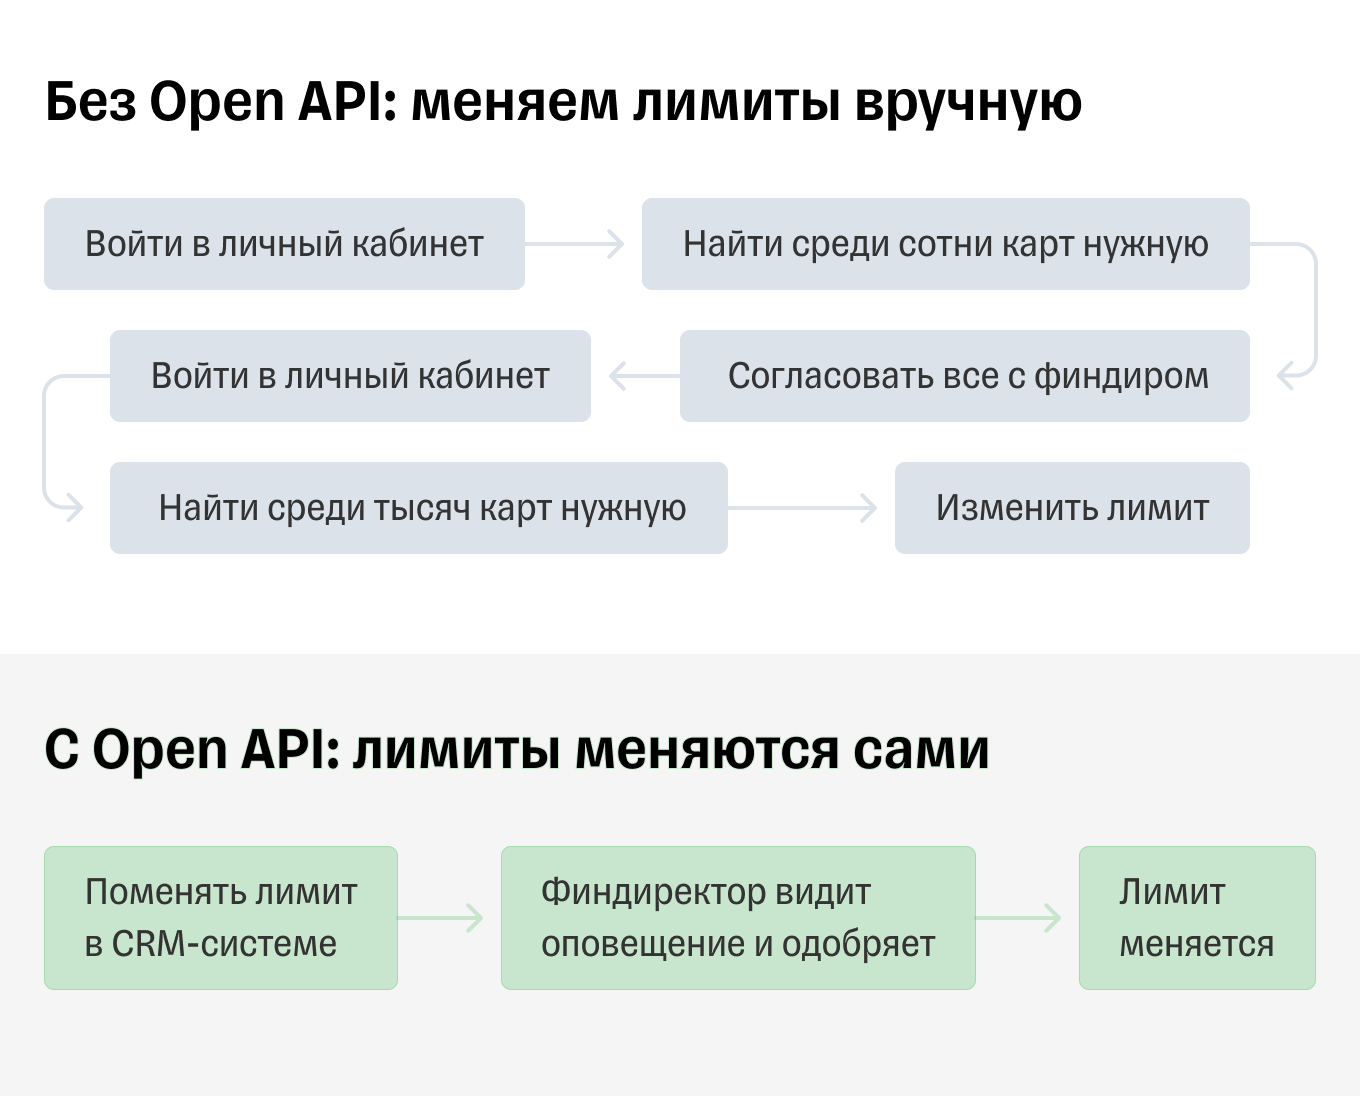 Установка лимита по карте с Open API и без него